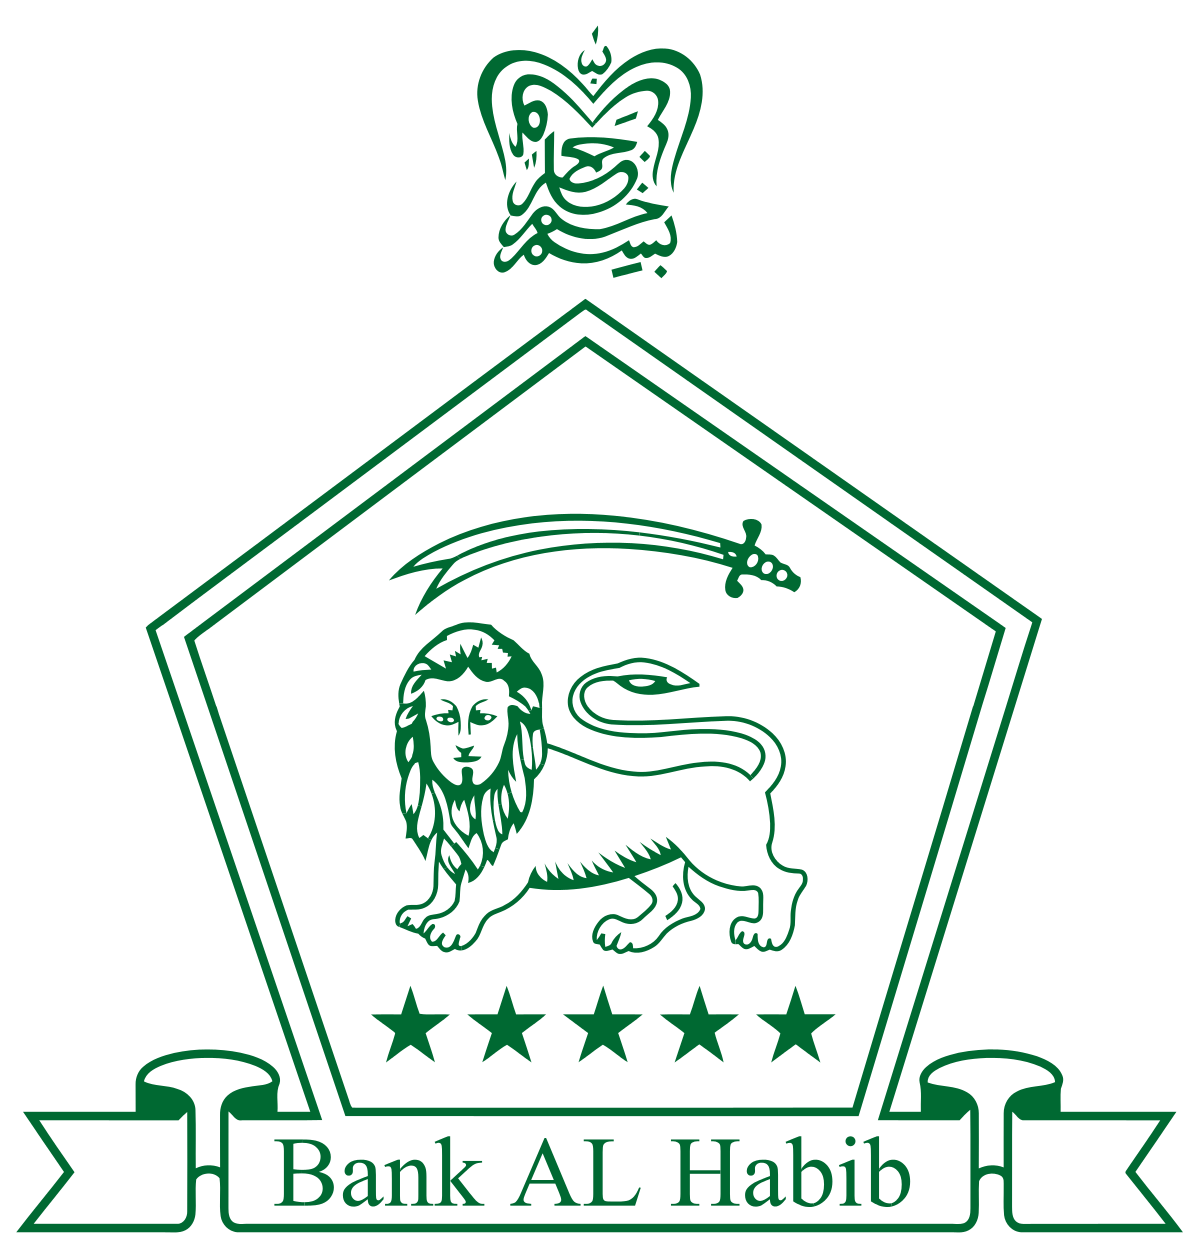 Bank Al Habib Limited: Purpose, Values, FAQ, Contact  Details